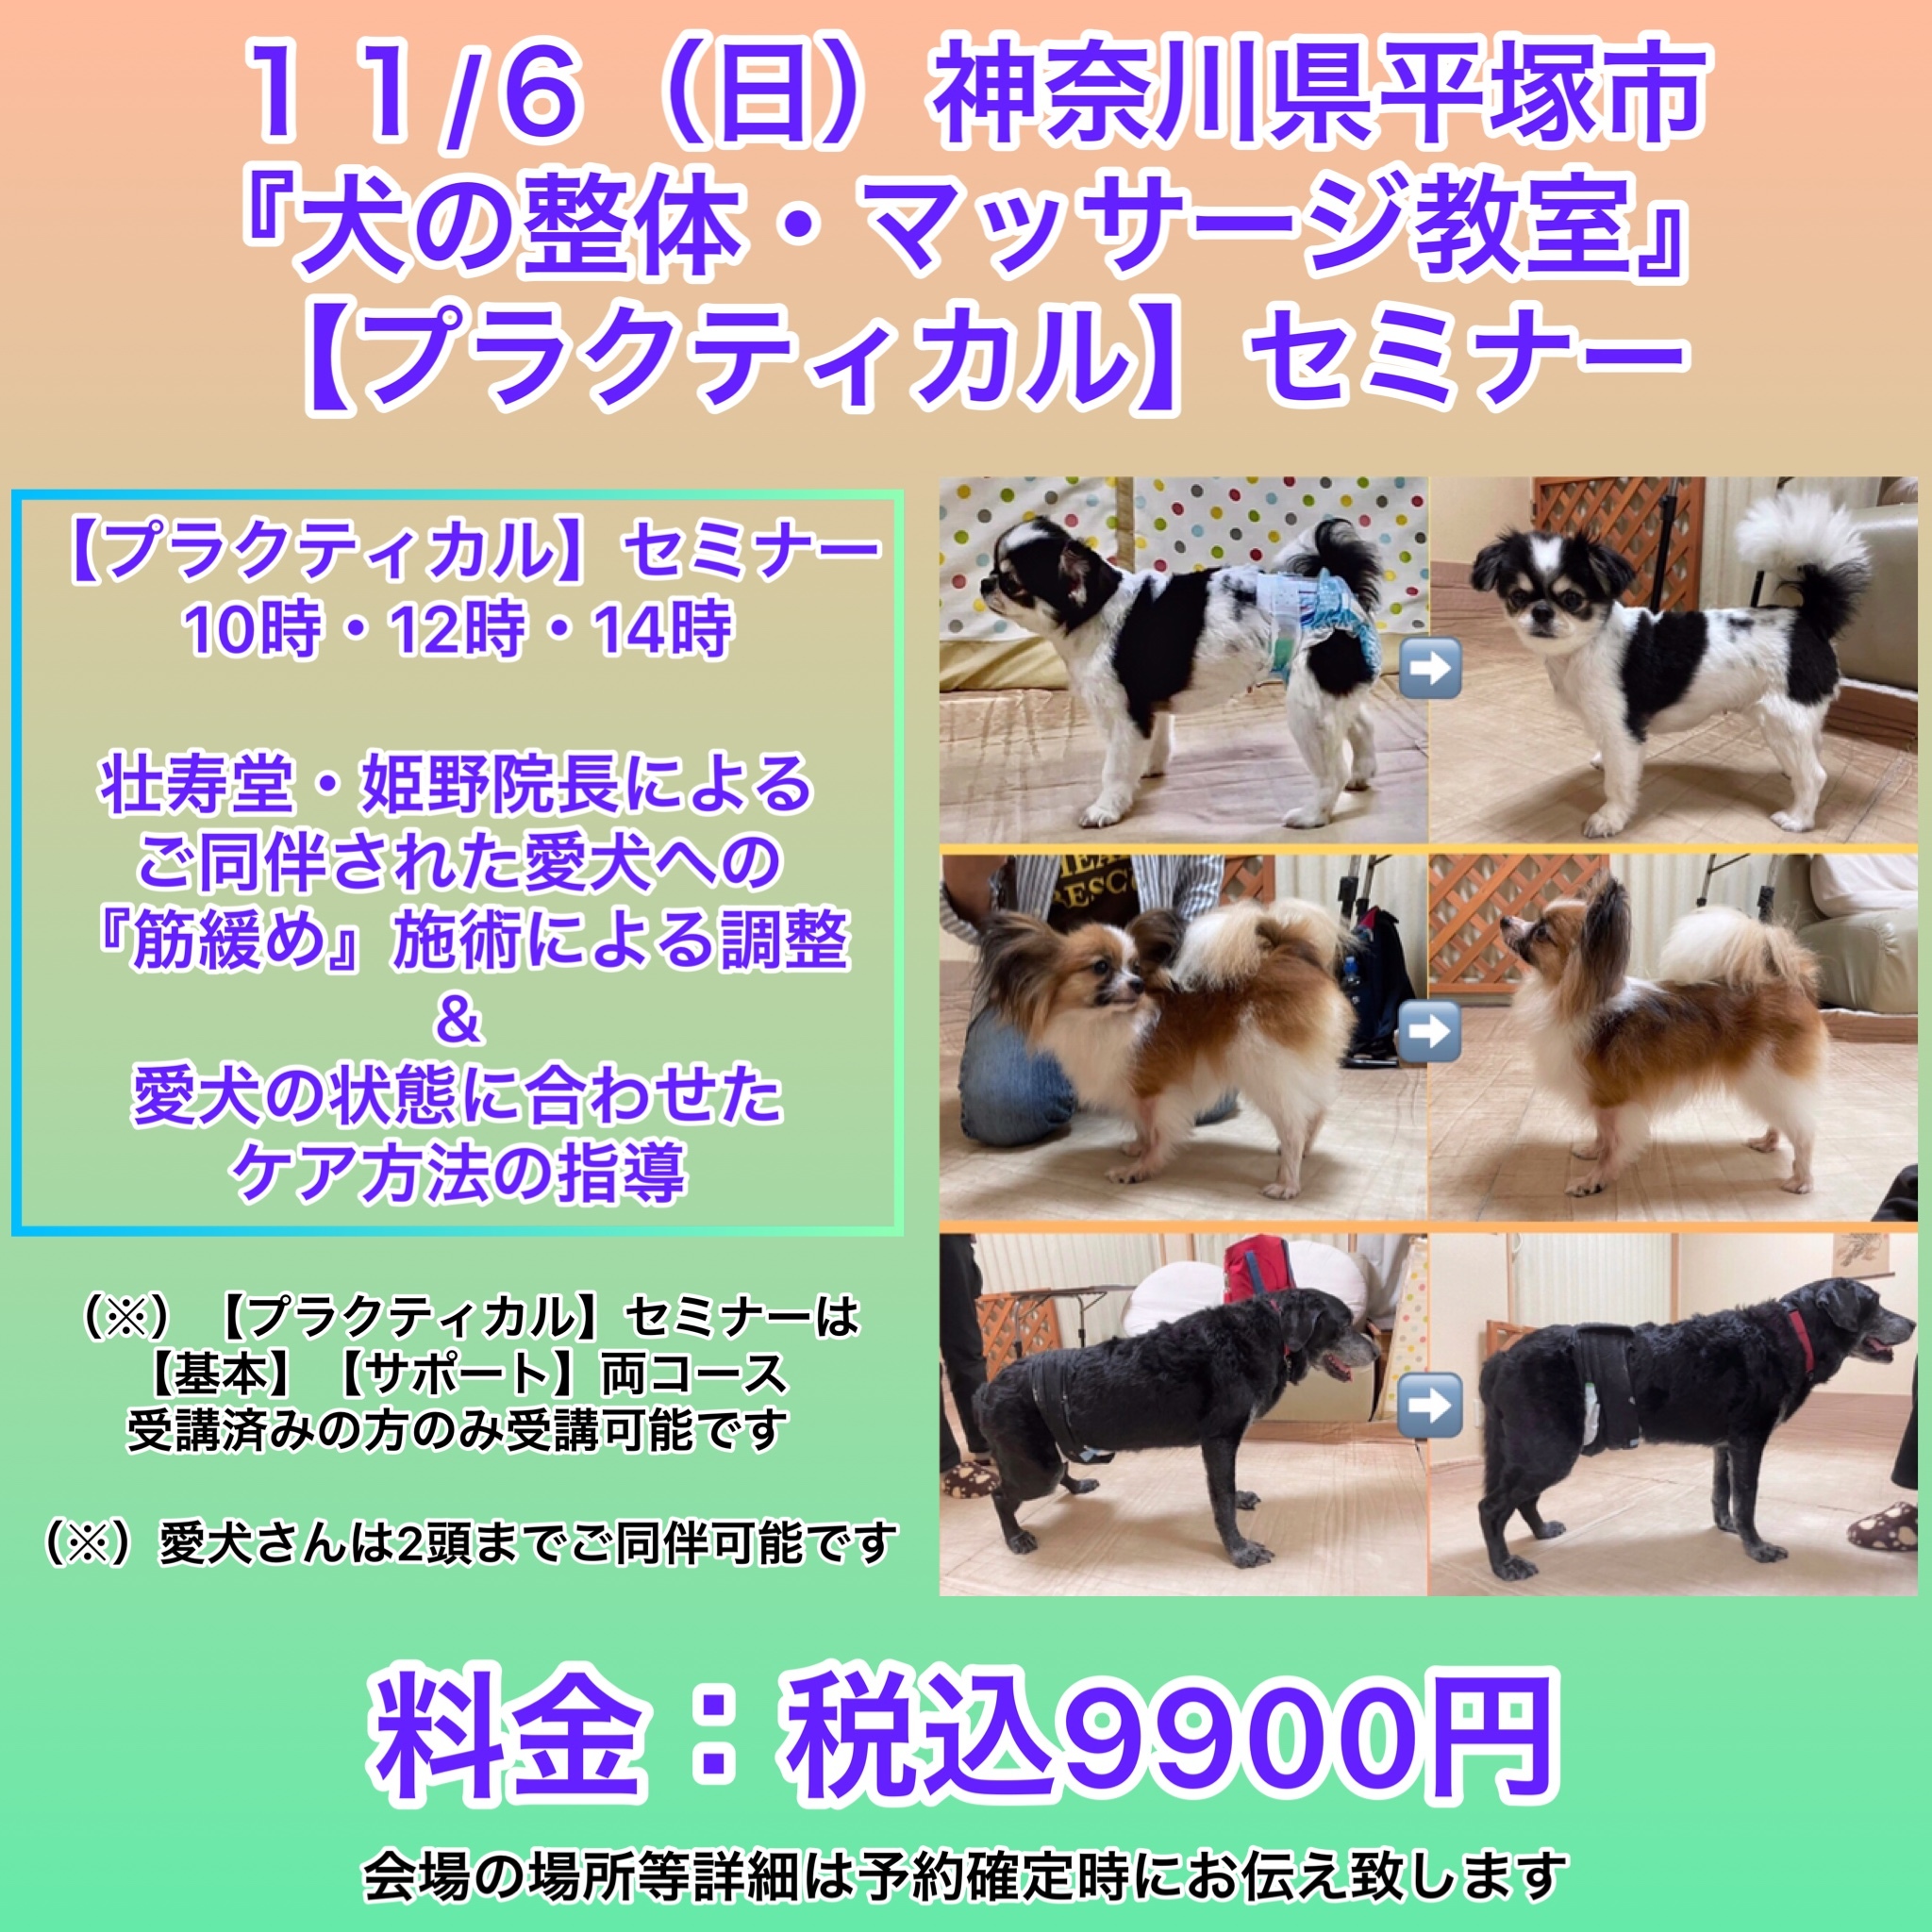 神奈川県犬の整体マッサージセミナー告知